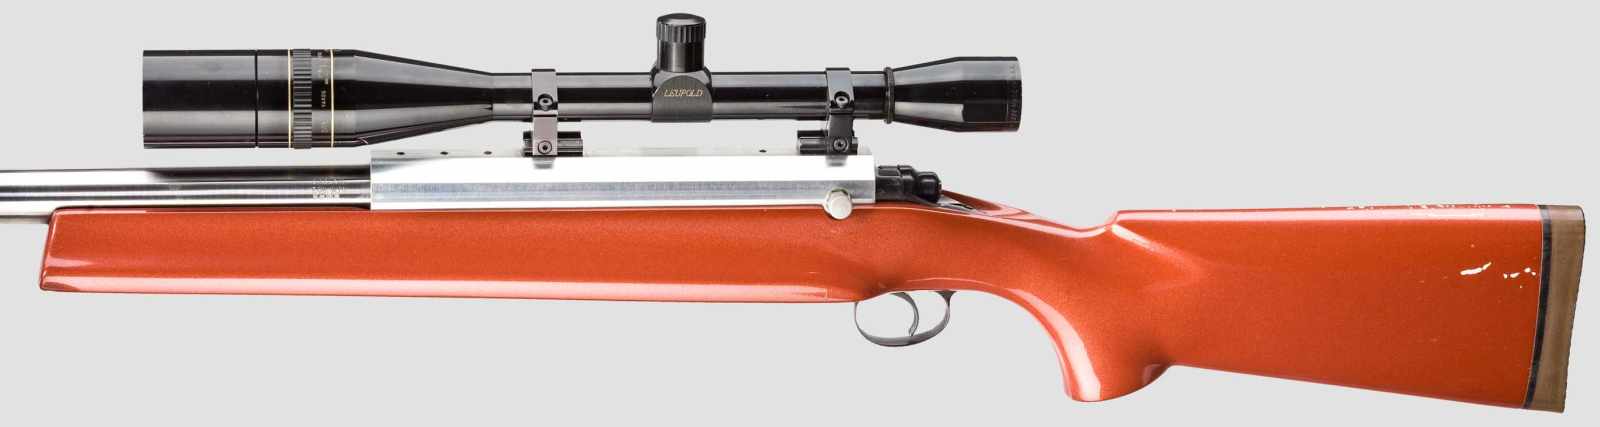 Benchrestbüchse Plank auf Basis Remington 700 Kal. .308 Win., Nr. 353691, dt. Beschuss. Lauf 60 - Image 2 of 3